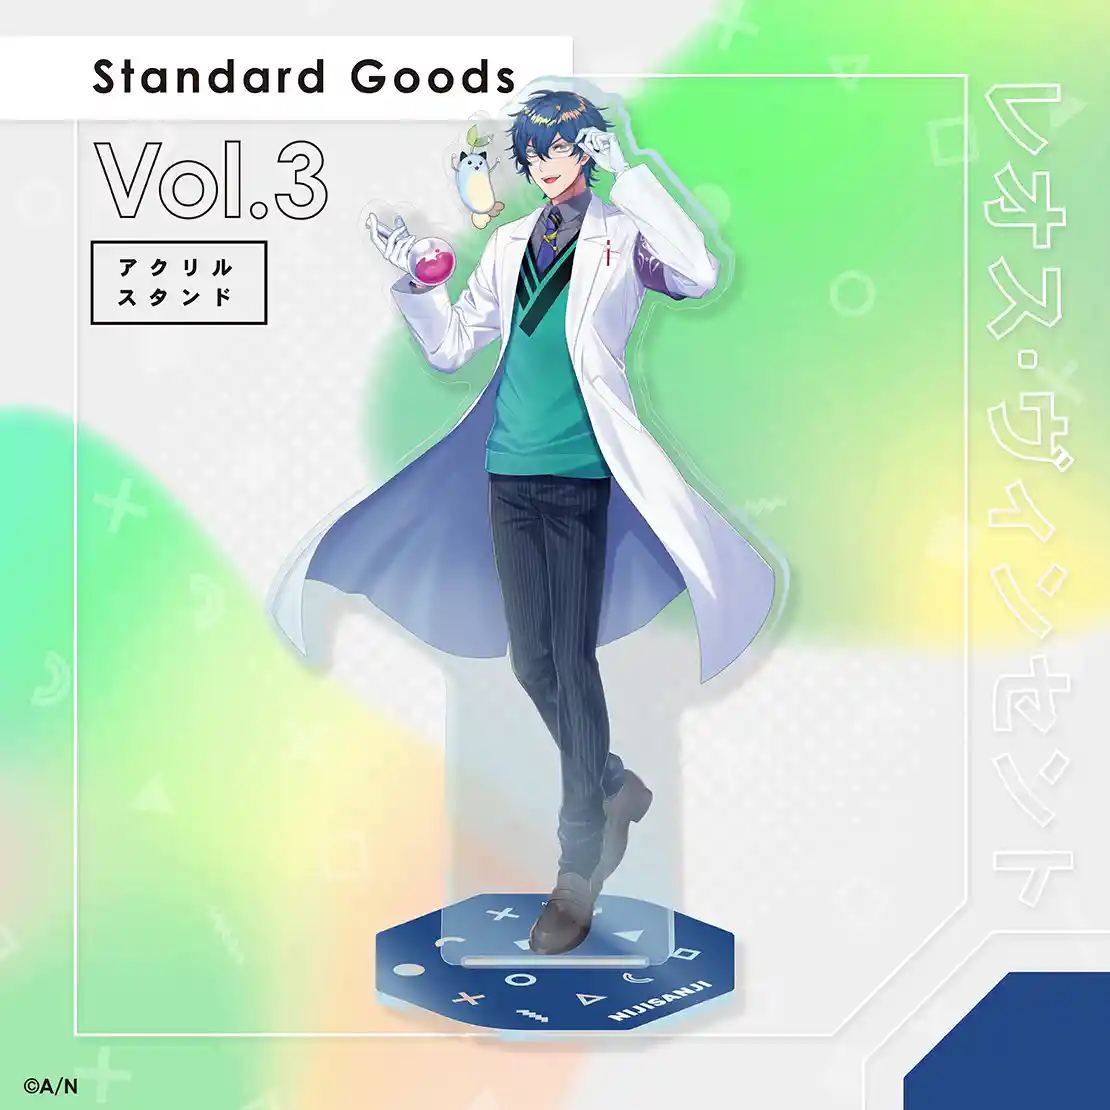 「Standard Goods Vol.3」02